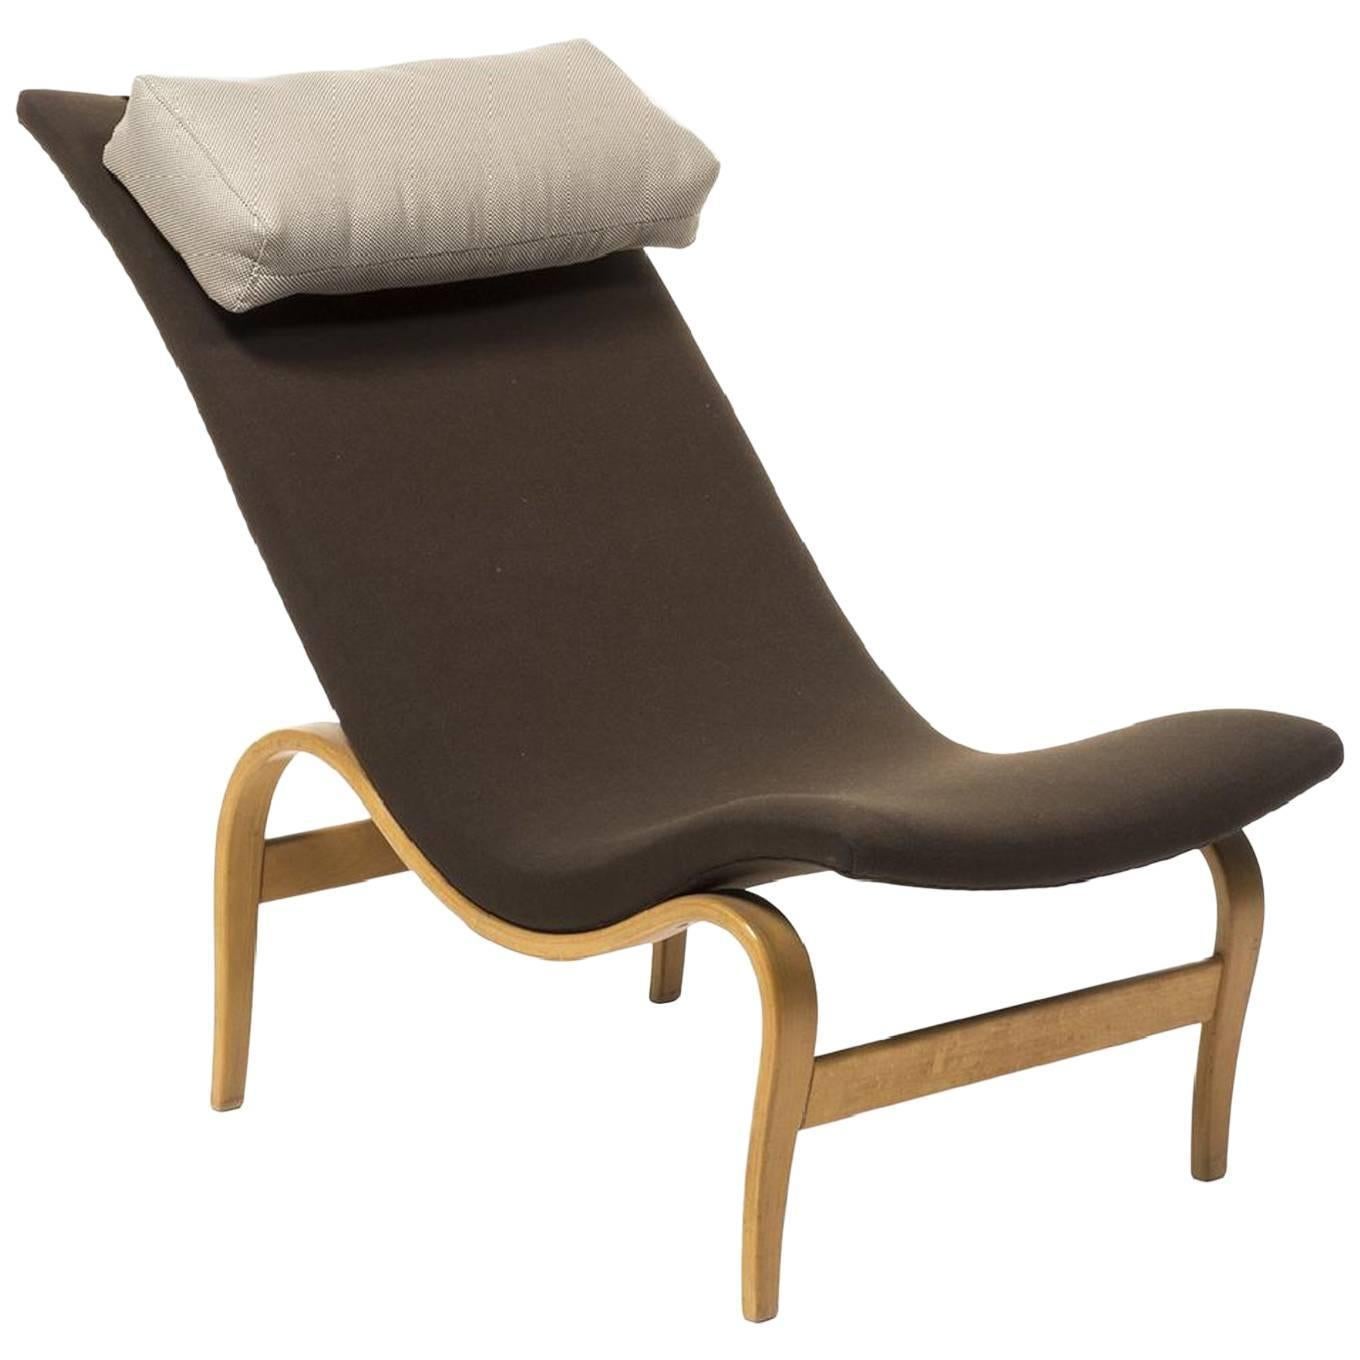 Parmi les premières créations de Bruno Mathsson figure ce rare fauteuil modèle 36 garni d'un appui-tête en lin.

Mesures : 79 cm H x 173 cm L x 79 cm P.